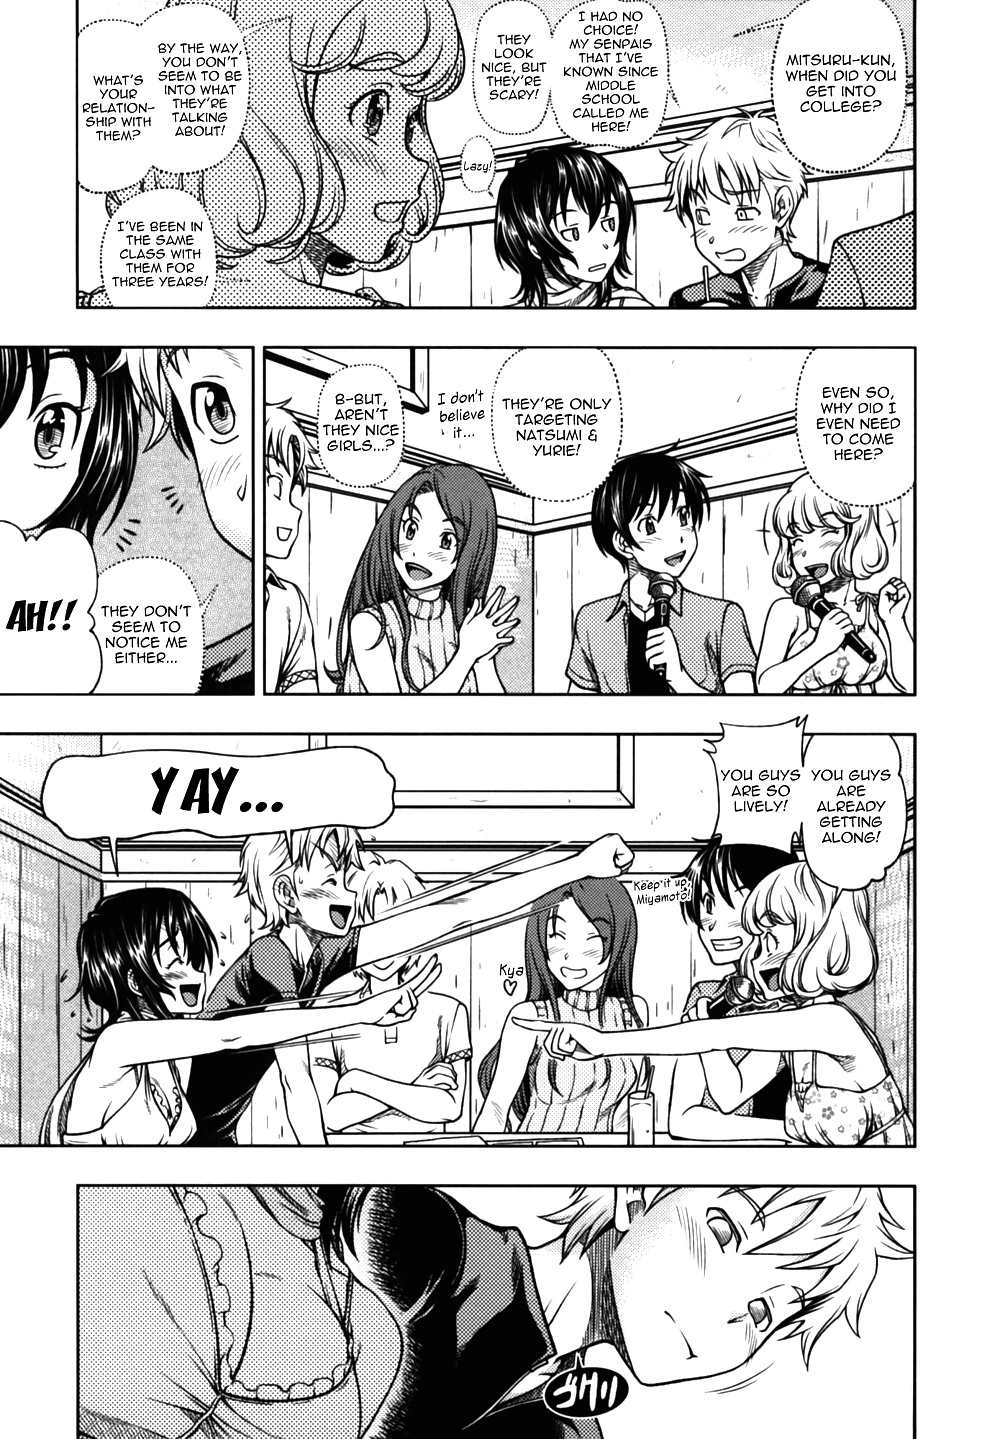 (fumetto hentai) fukudada opere erotiche #3
 #29623444